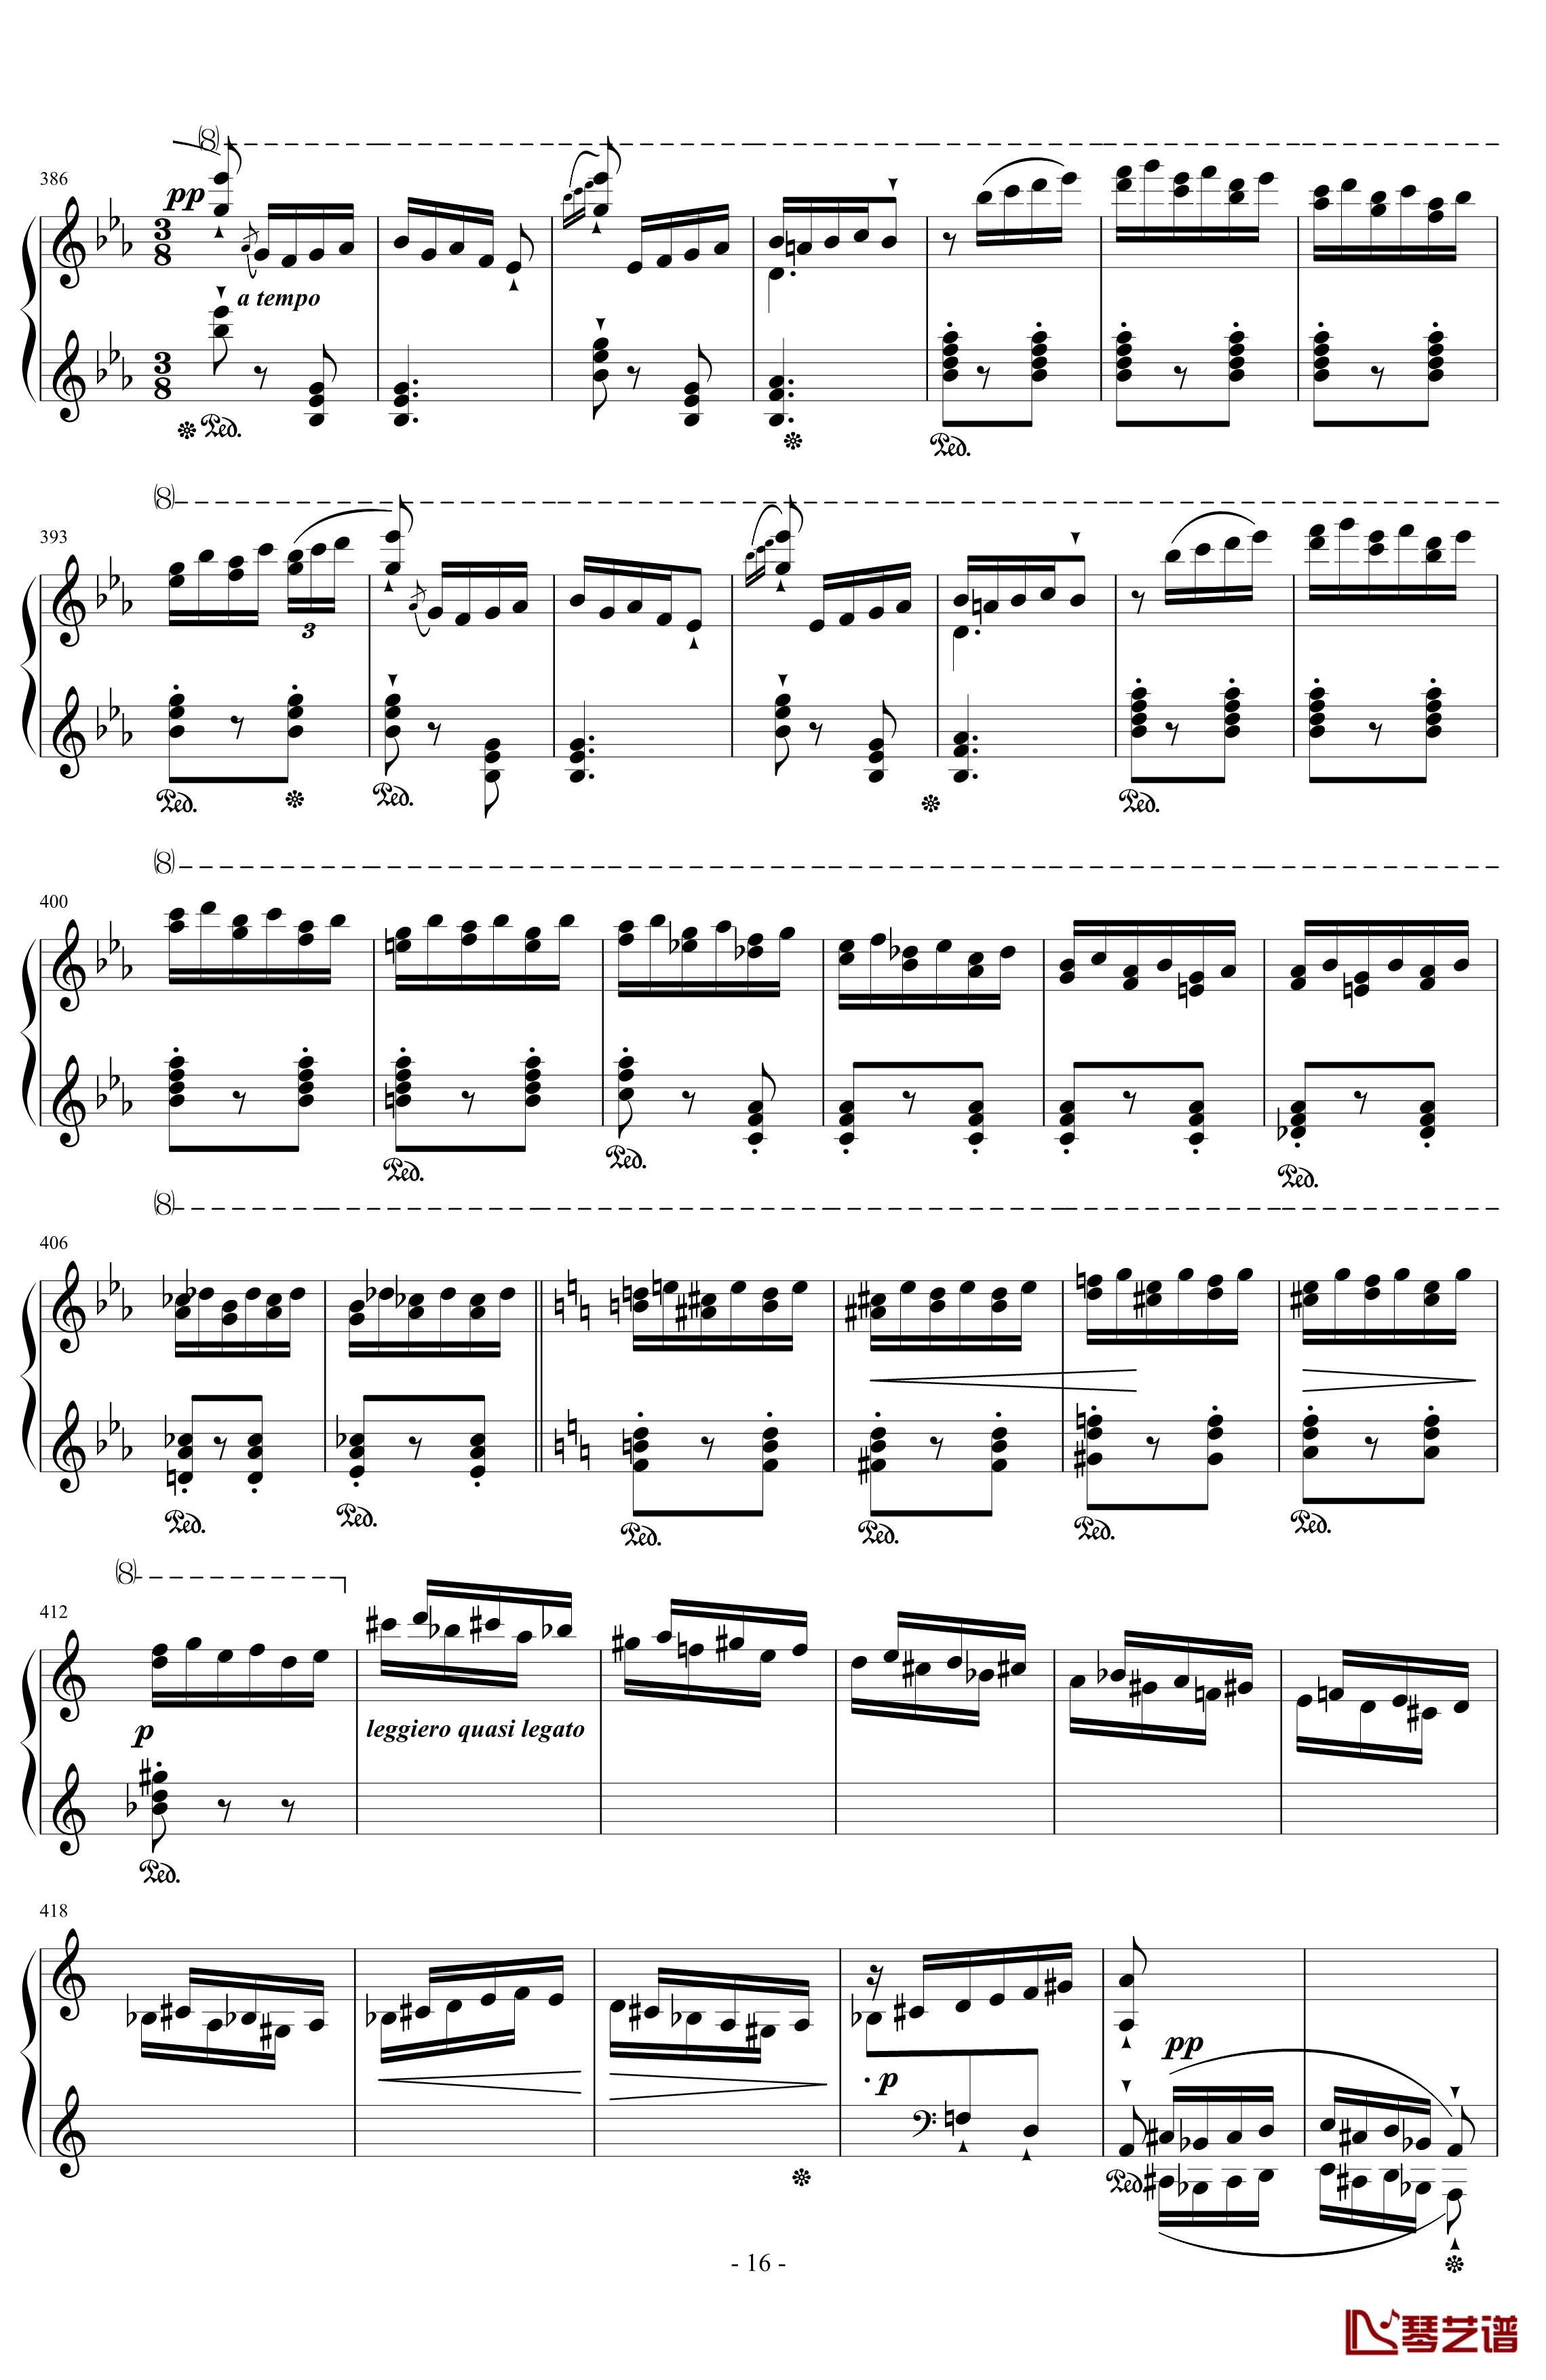 西班牙狂想曲钢琴谱-难度极高的炫技大作-李斯特16